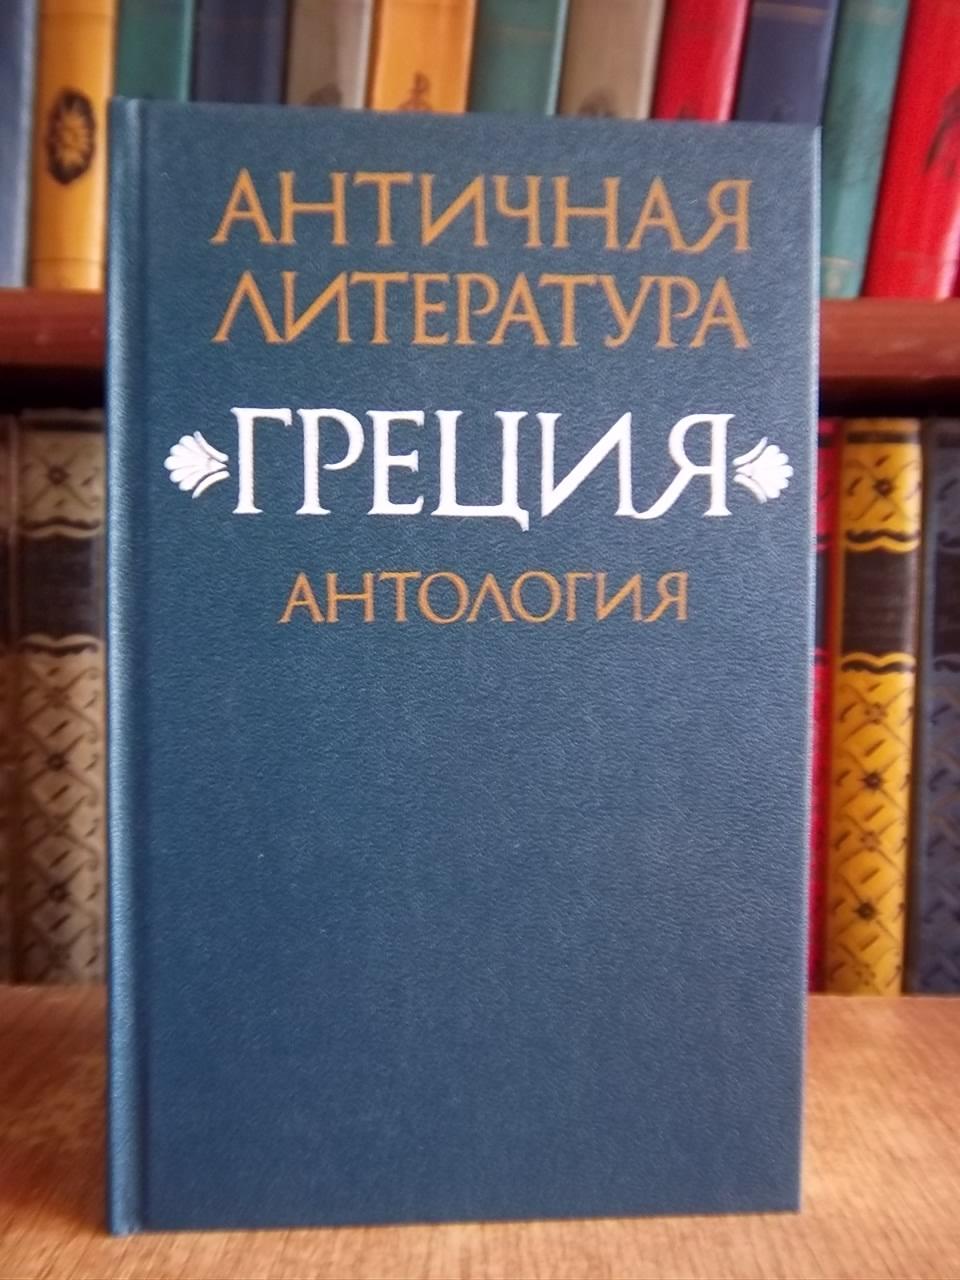 Античная литература. Греция. Антология. В двух книгах. Книга 1.